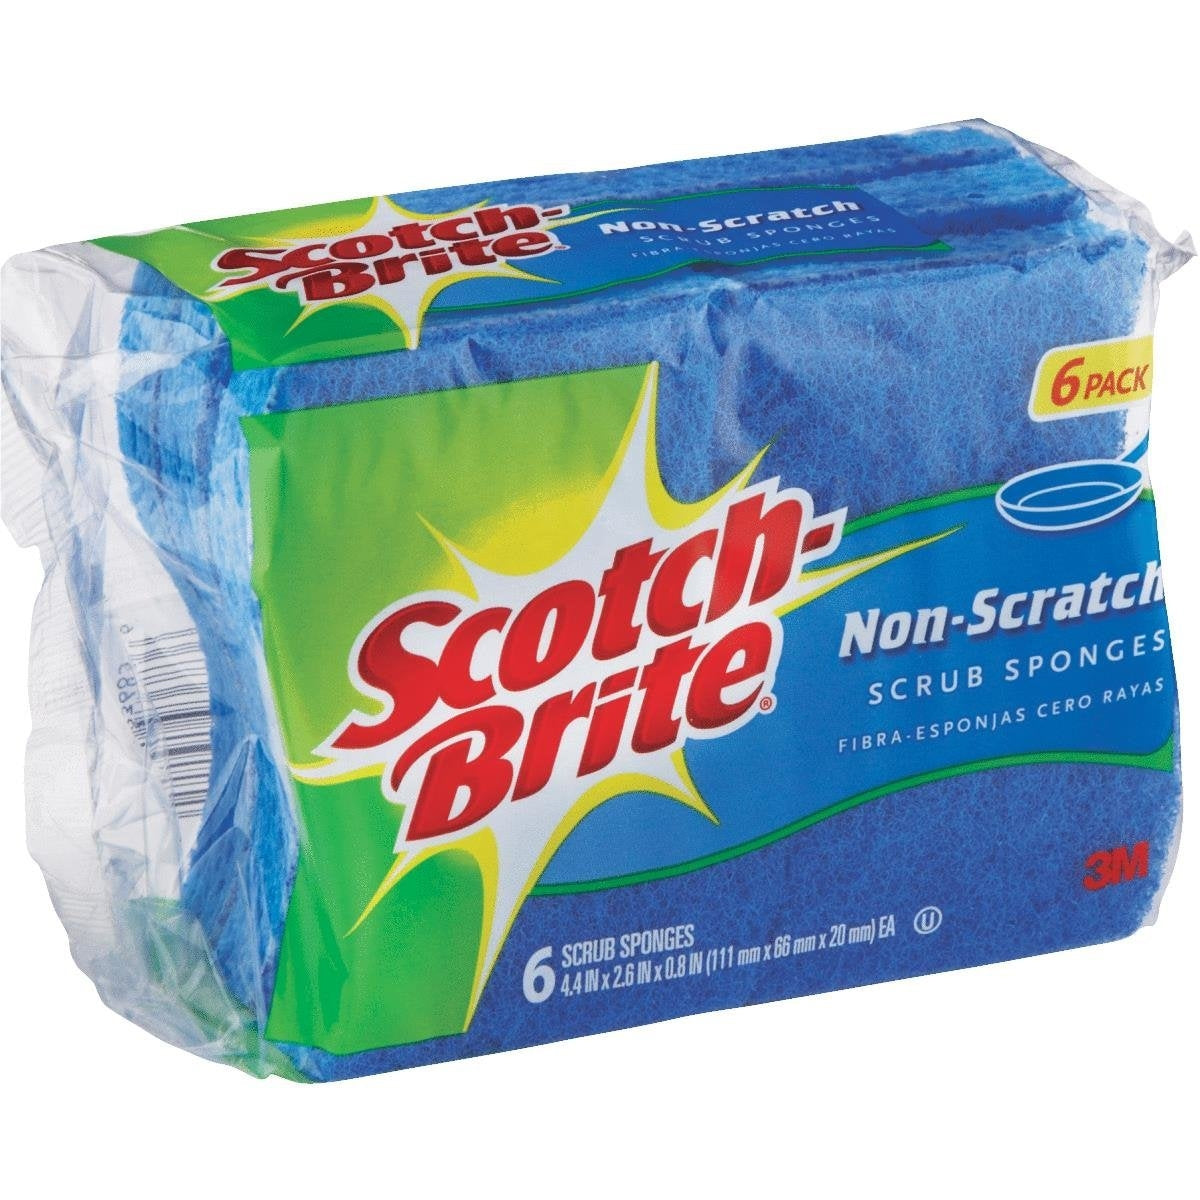 Scotch-Brite Non-Scratch Scrub Sponge – Johnnie Chuoke's Home and Hardware